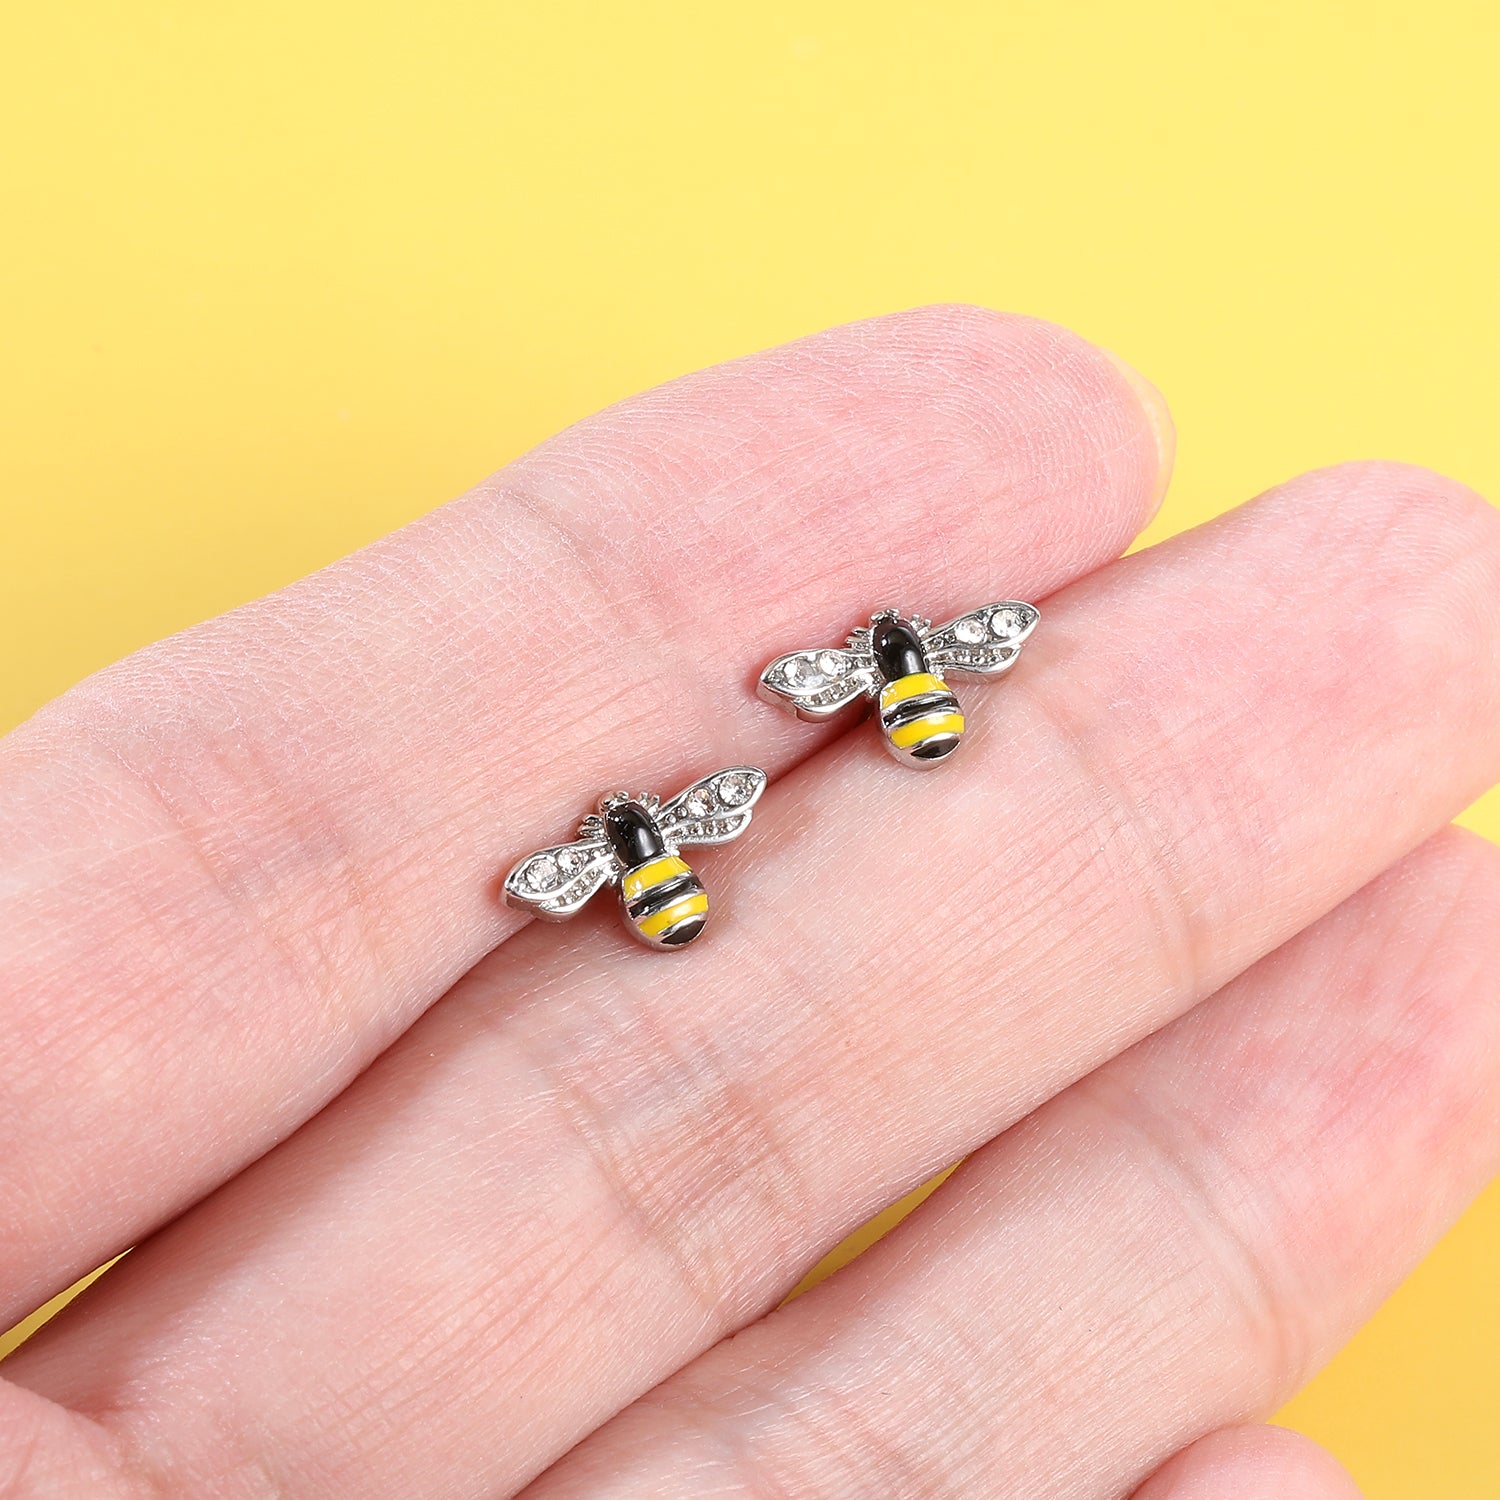 16g-bee-stud-earring-cute-ear-stud-jewelry